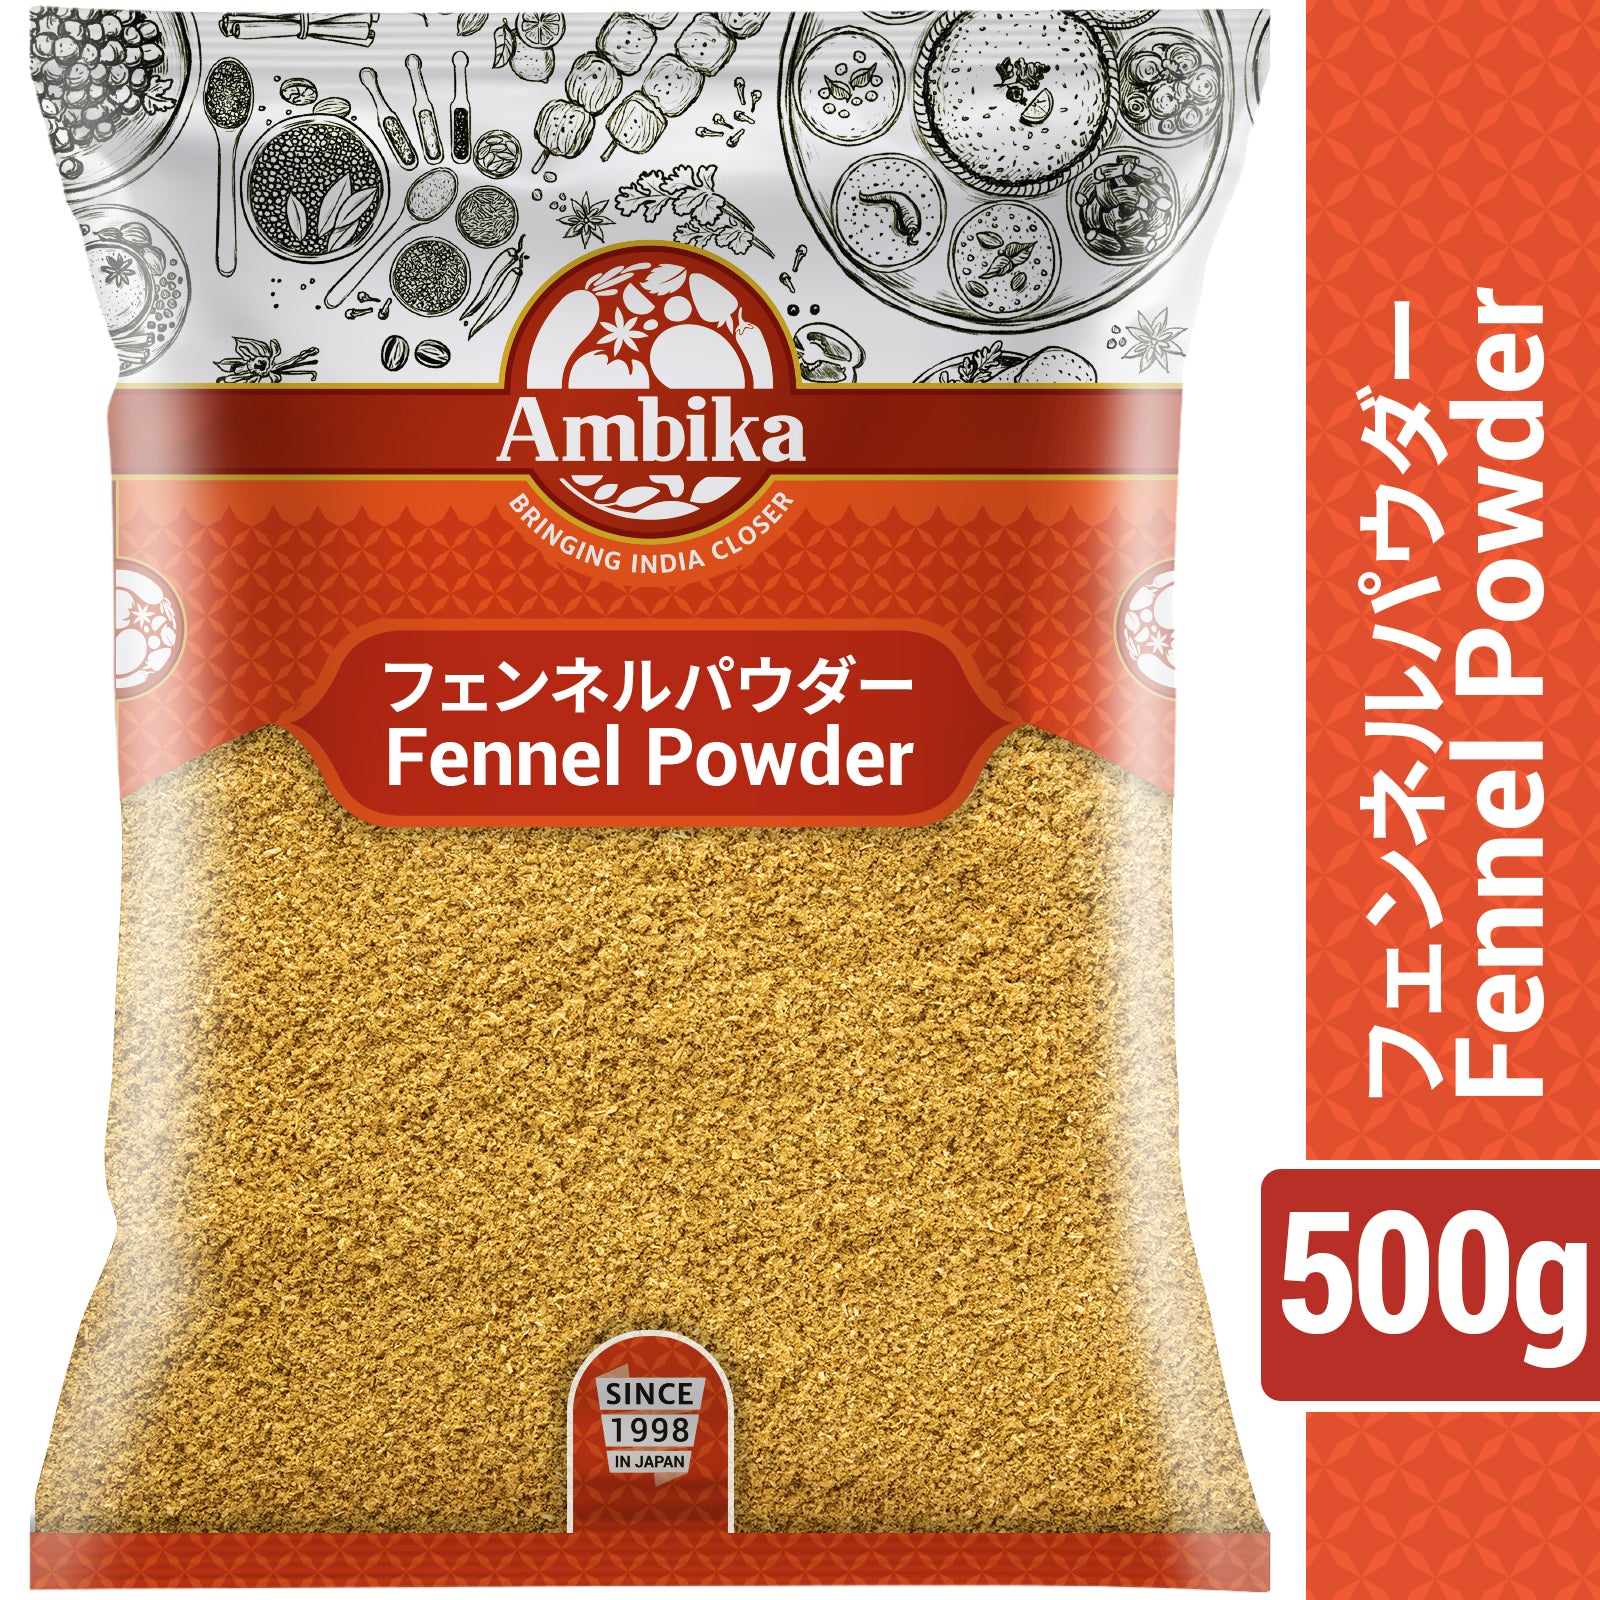 Ambika Fennel Powder 500g